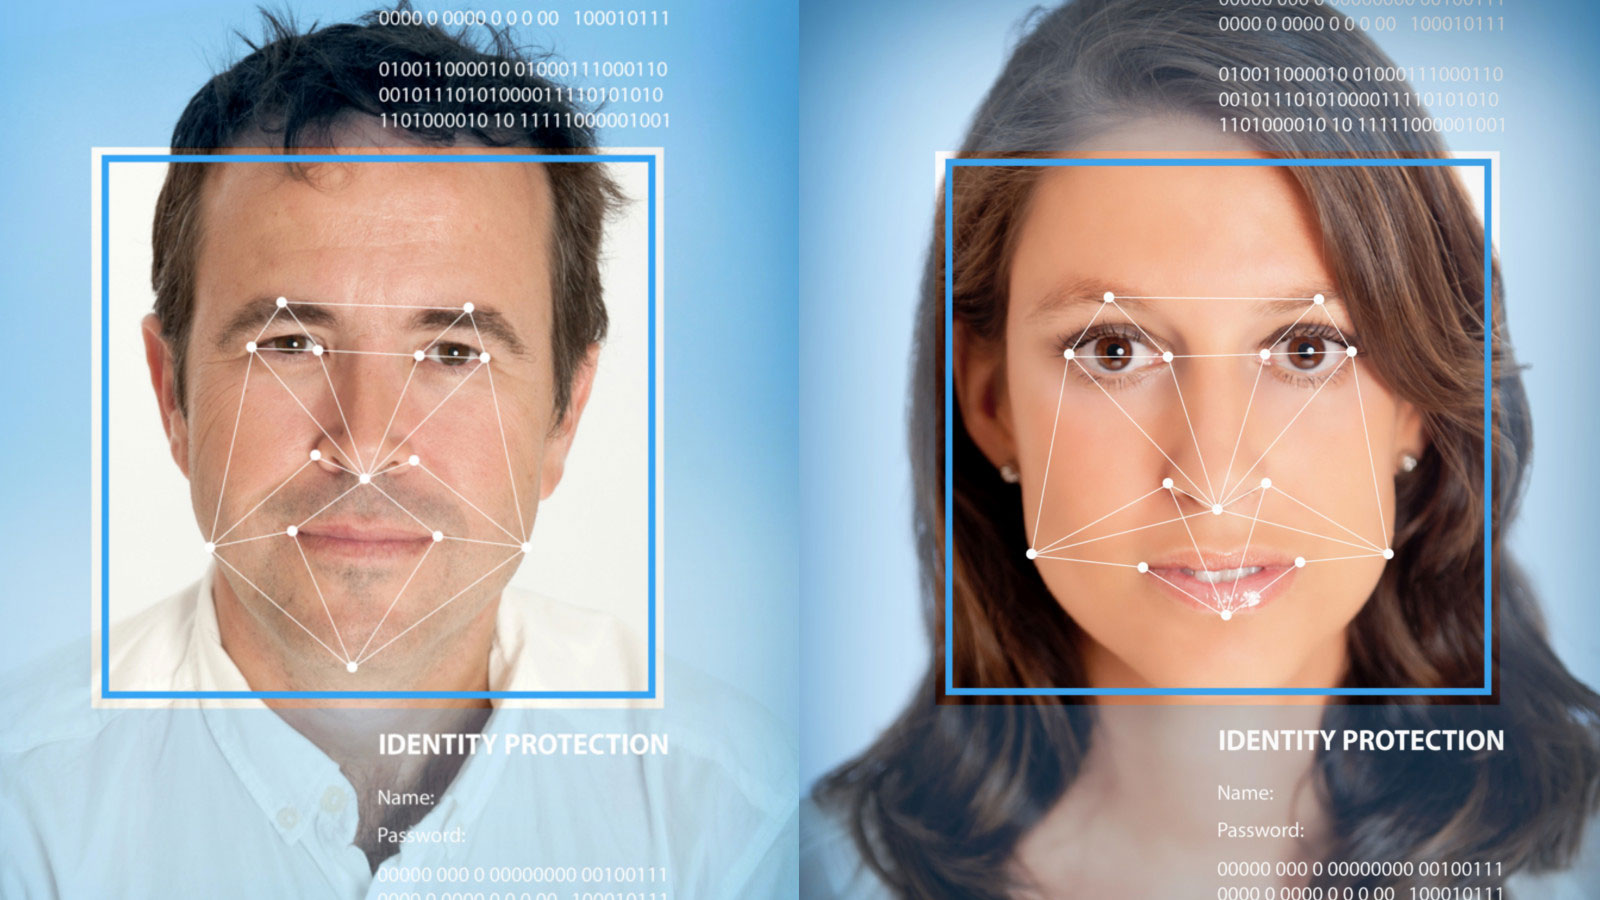 Tecnologia abre portas apenas com reconhecimento facial